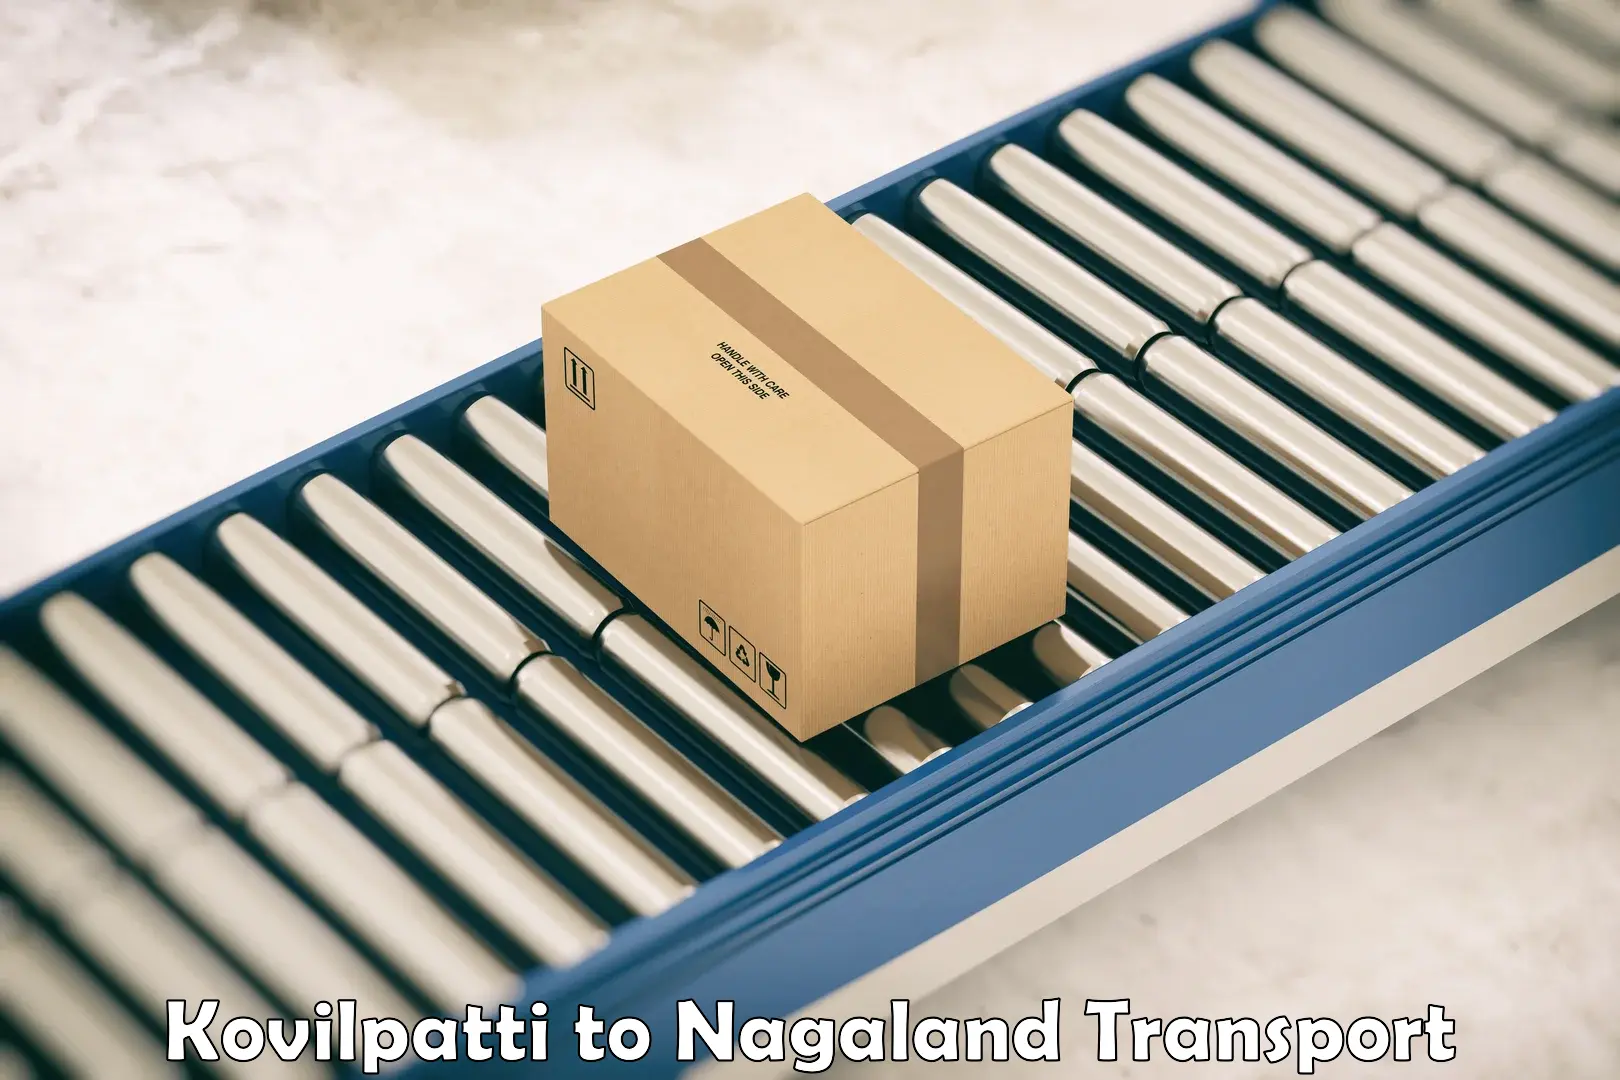 Online transport service Kovilpatti to NIT Nagaland